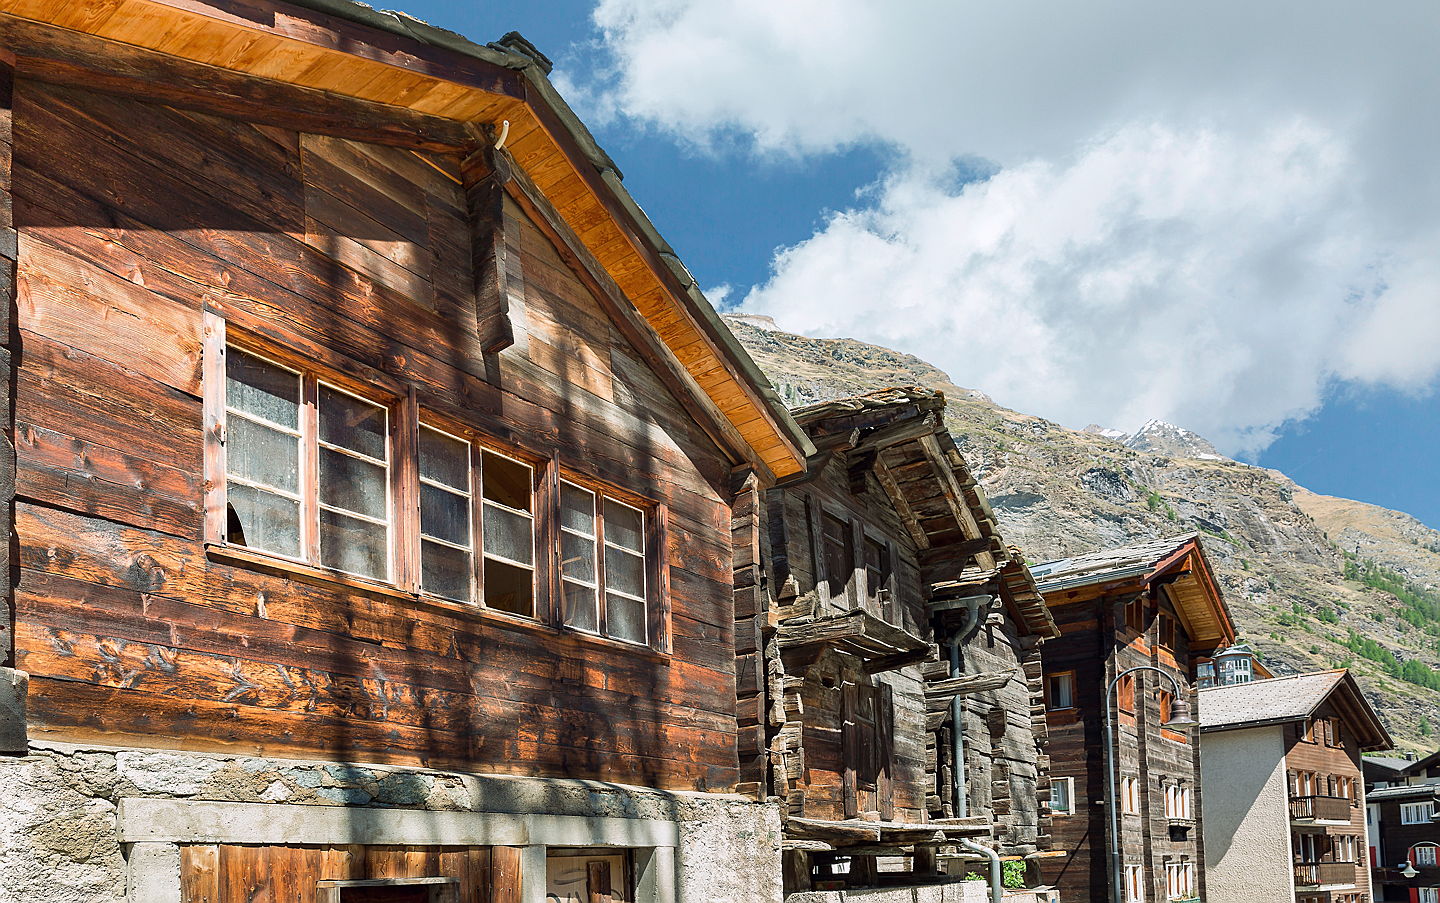  St. Moritz
- Chalet in Zermatt